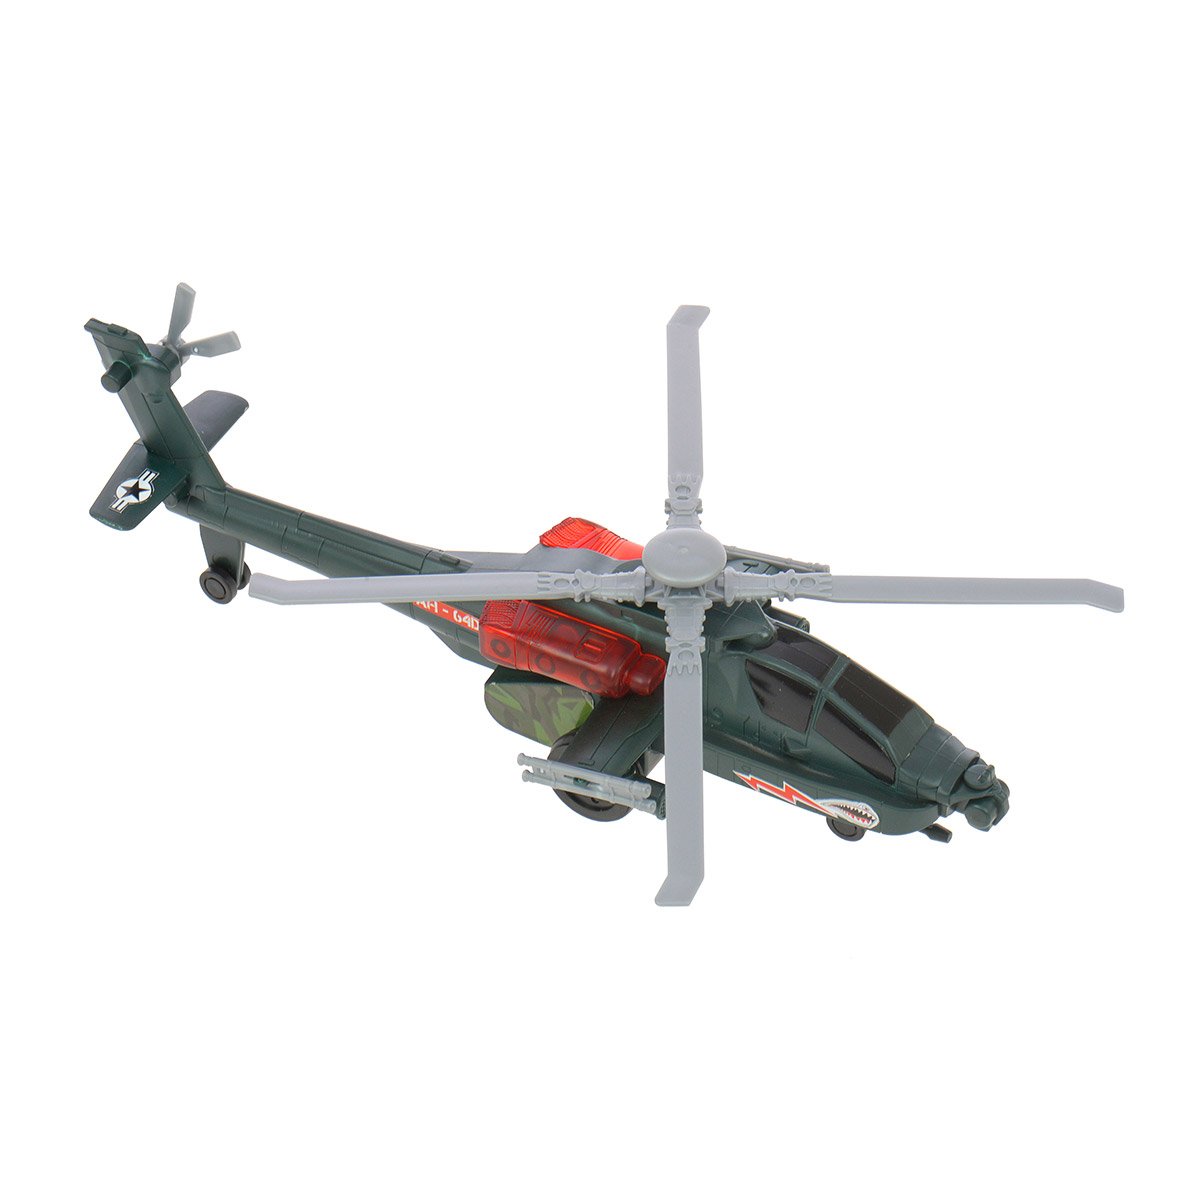 avion télécommandé S100 avec maintien d'altitude Syma Mini hélicoptère télécommandé mini avion modèle jouets pour garçons cadeau jouet d'hélicoptère intérieur 